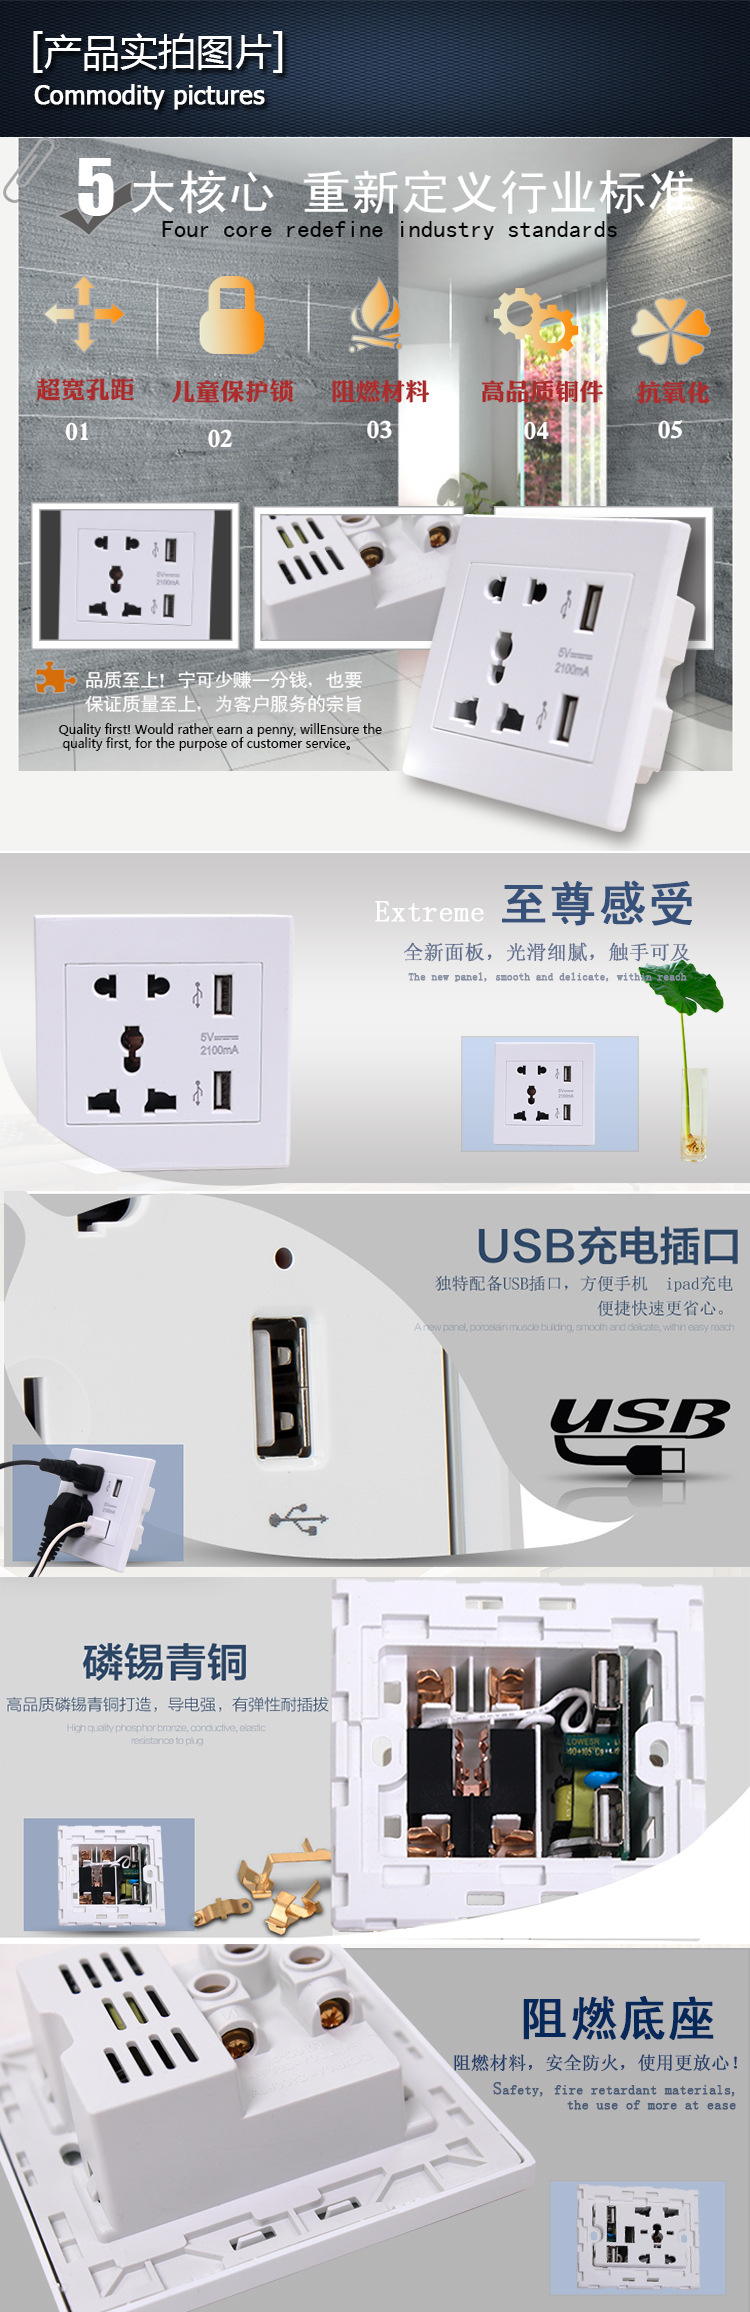 墙壁开关 白色多五孔双USB插座 精品USB插座 酒店家装插座 可贴牌